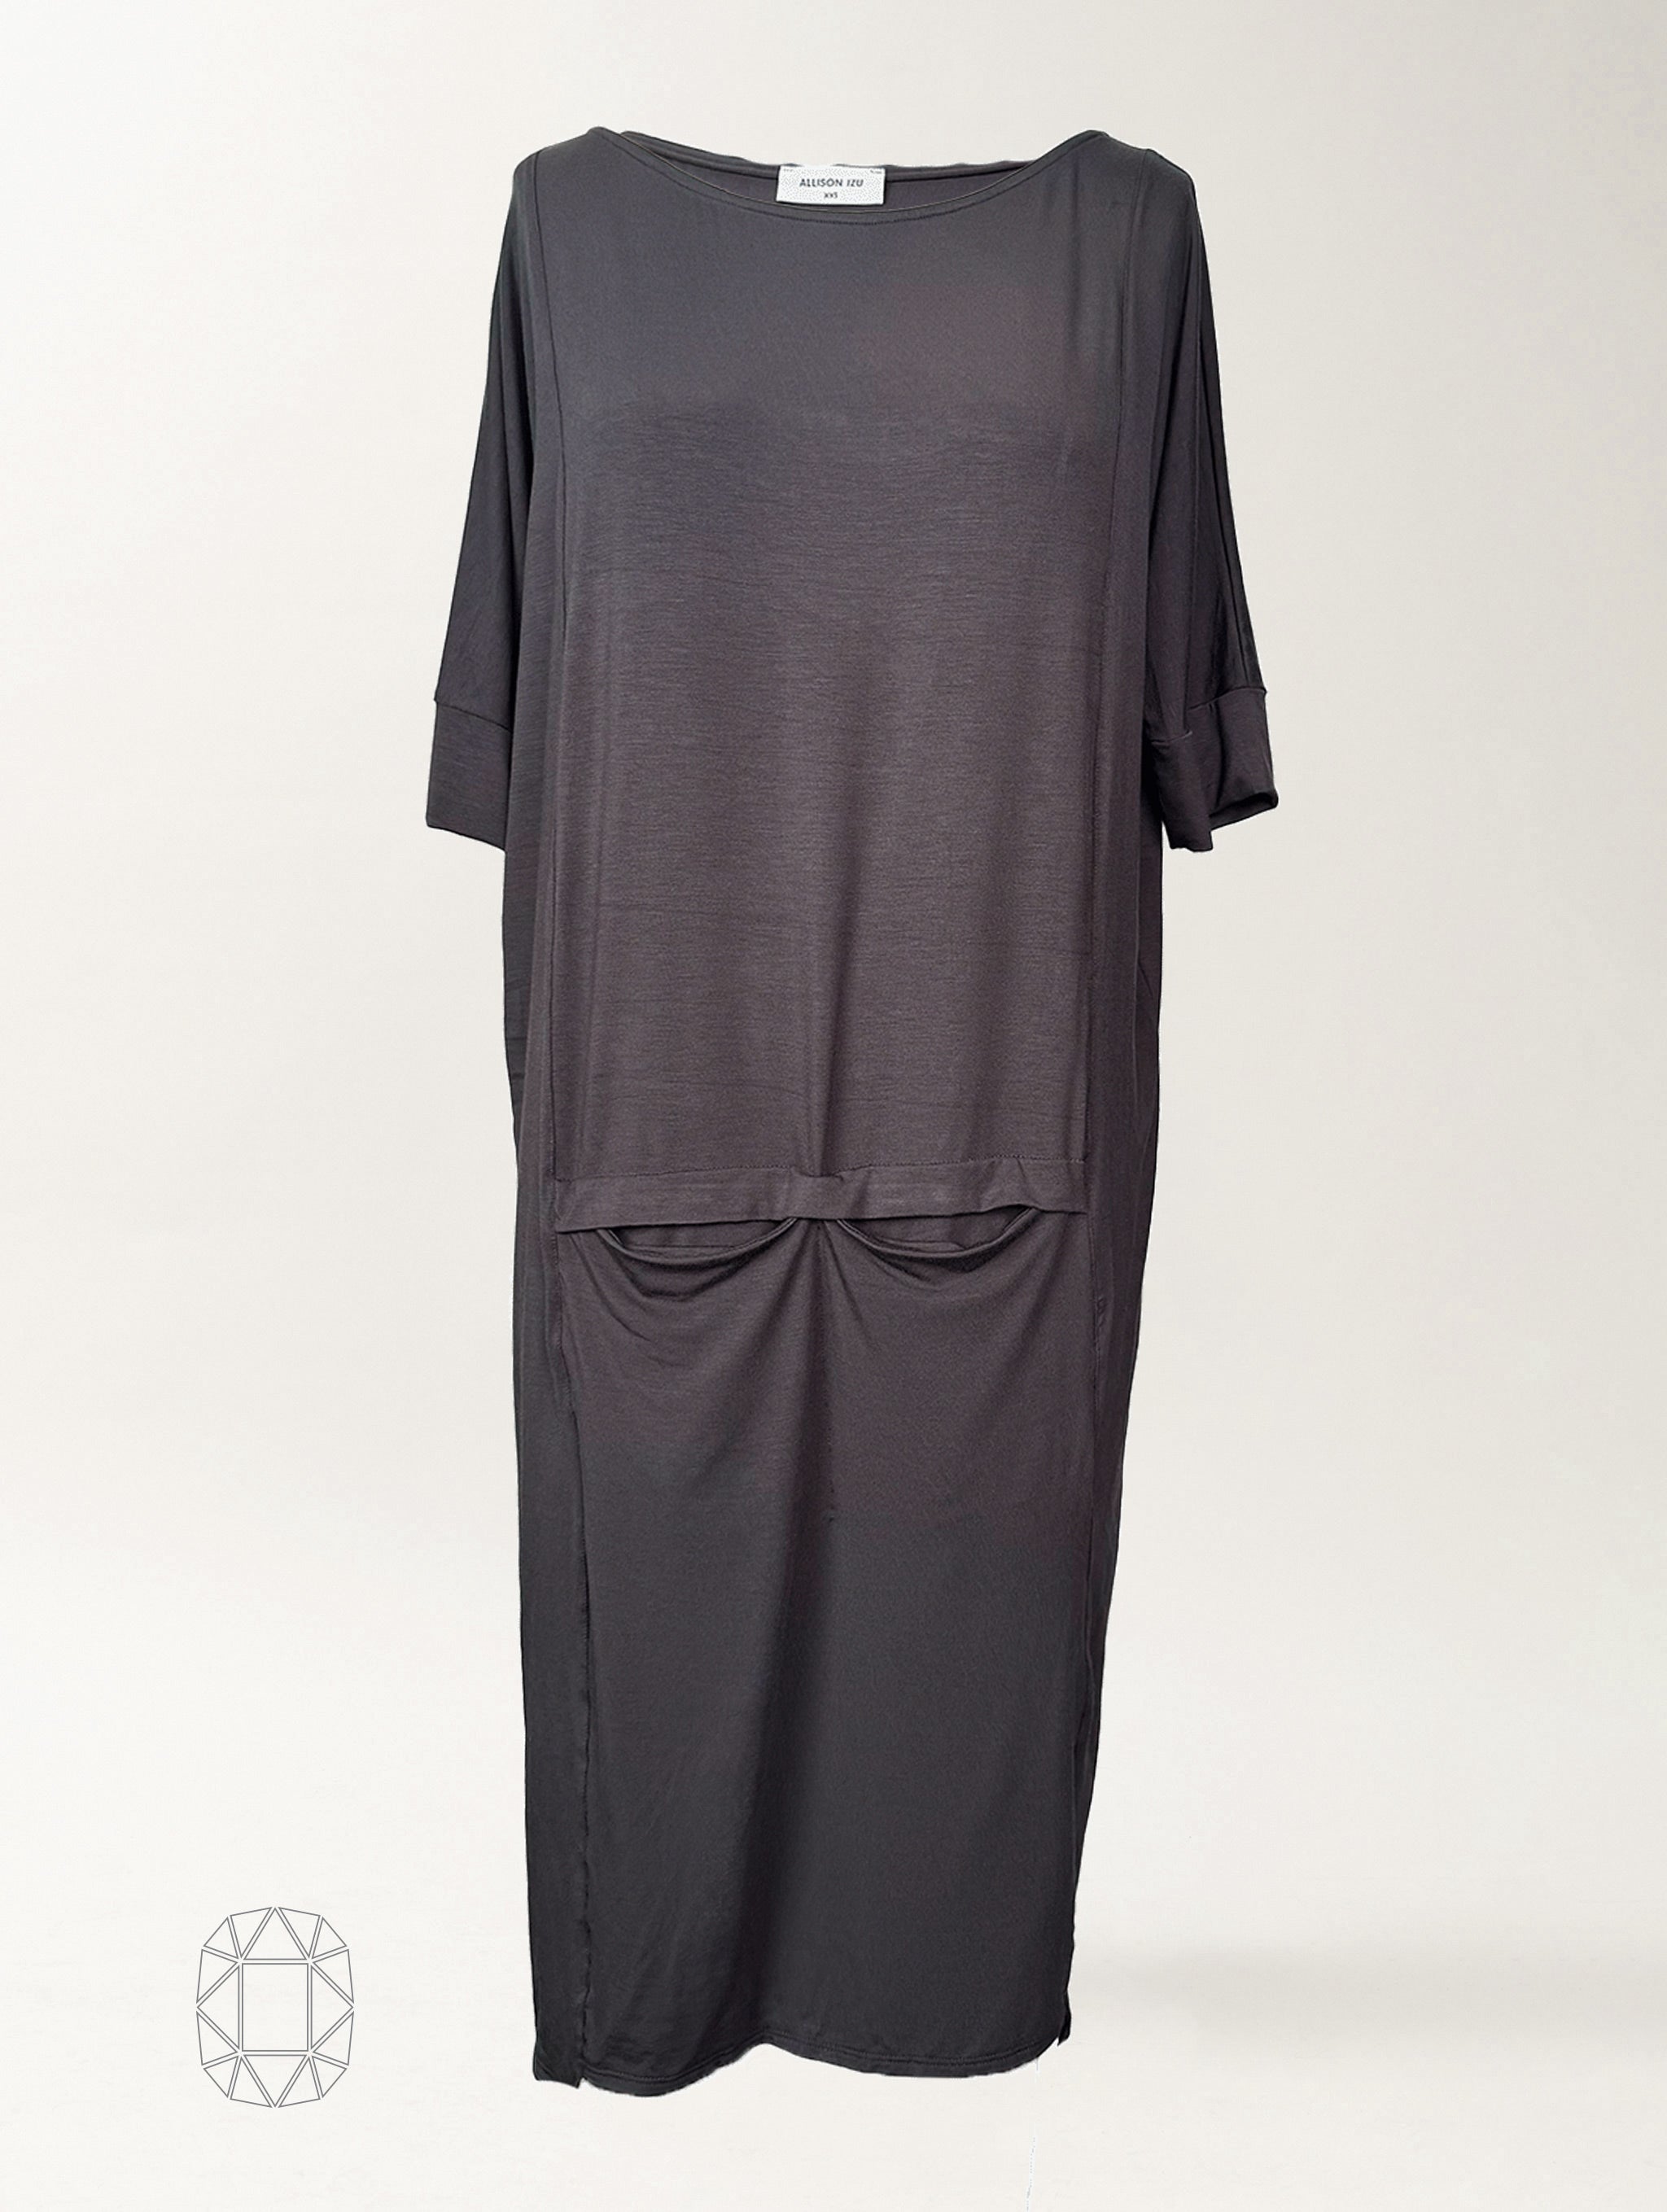 Danica Dress - Washed Black Rayon Jersey